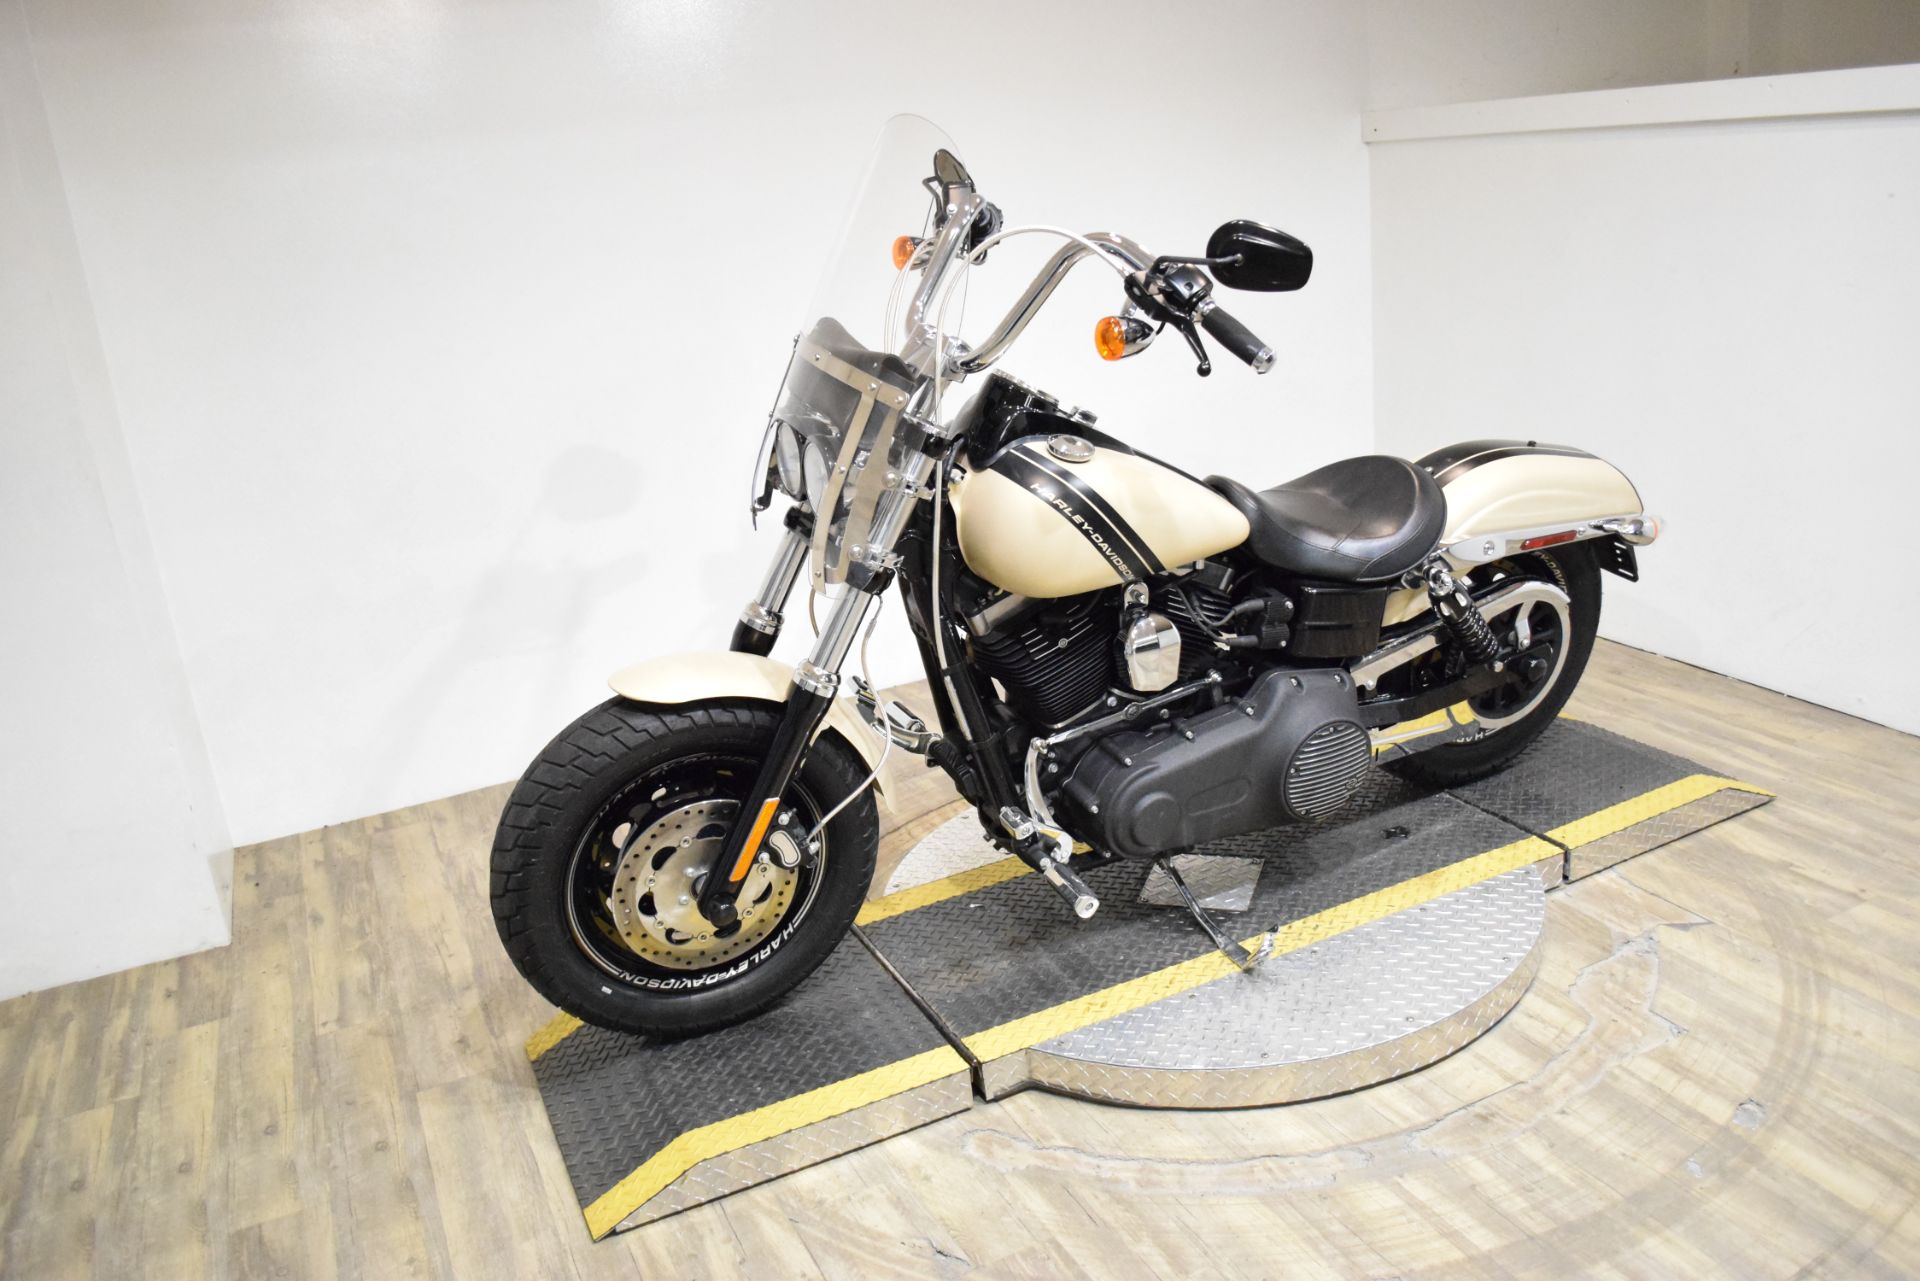 2014 Harley-Davidson Dyna® Fat Bob® in Wauconda, Illinois - Photo 22